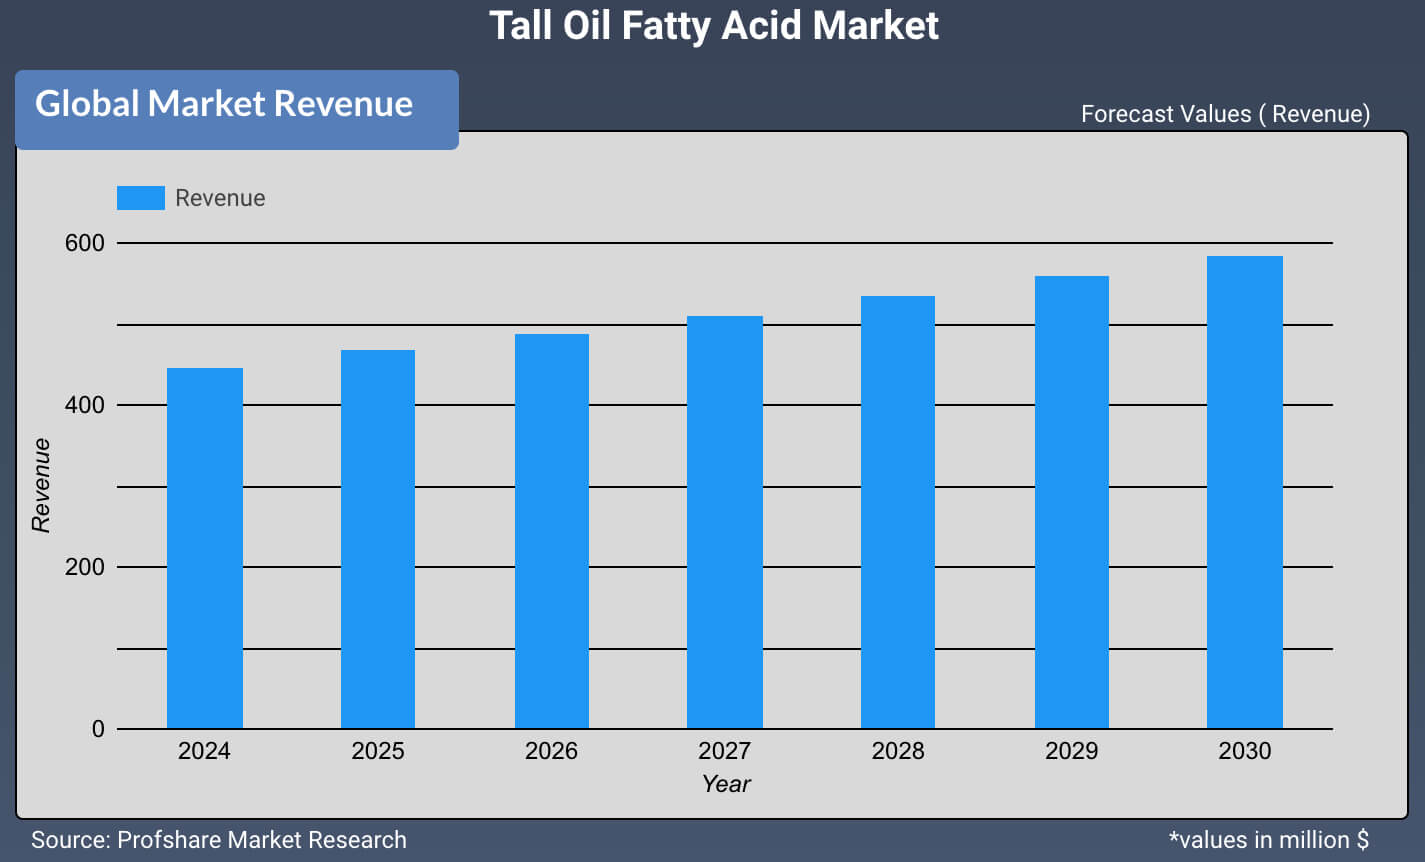 Tall Oil Fatty Acid Market